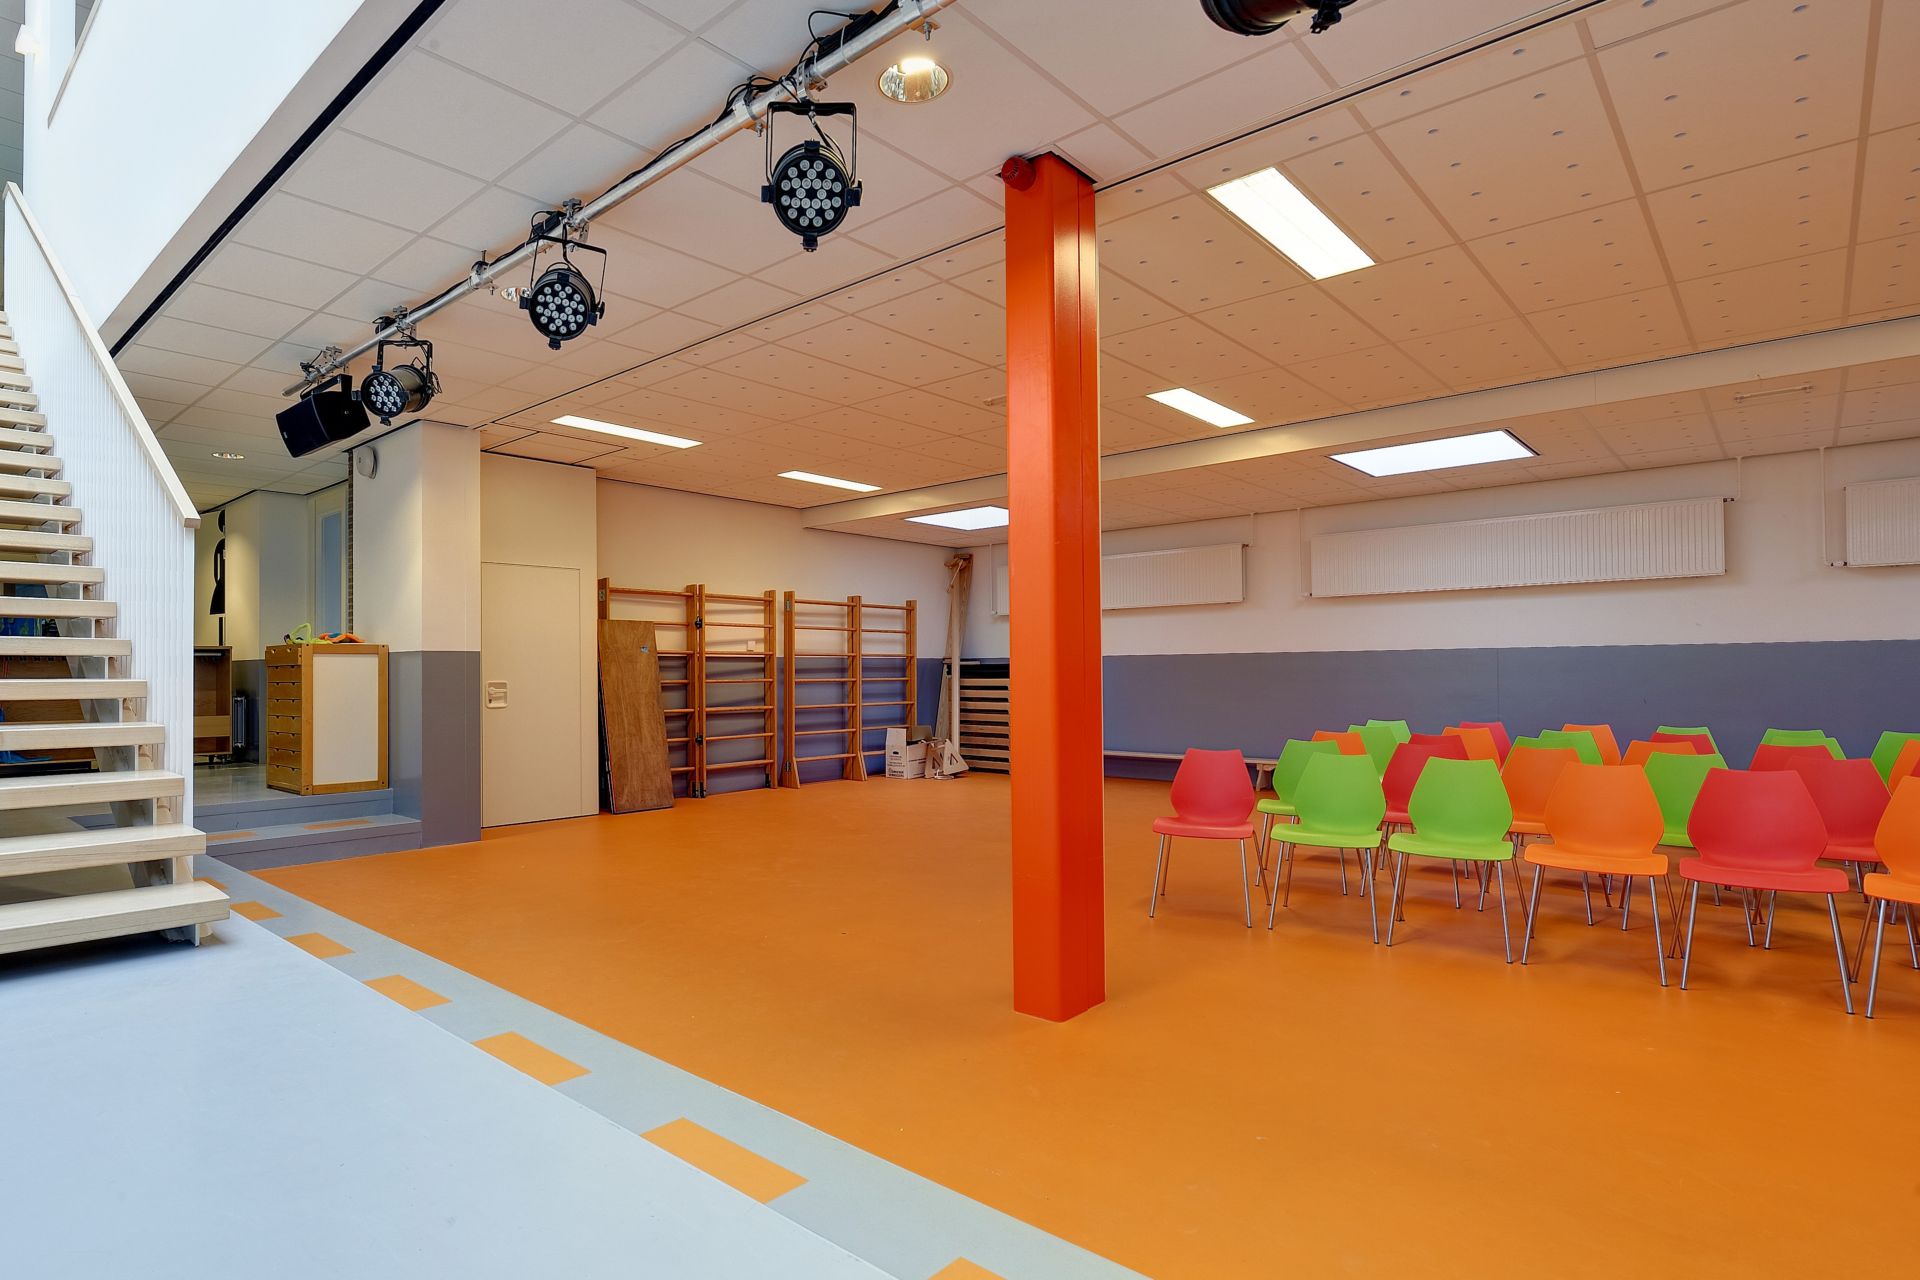 Sika ComfortFloor® orange floor at school in Netherlands